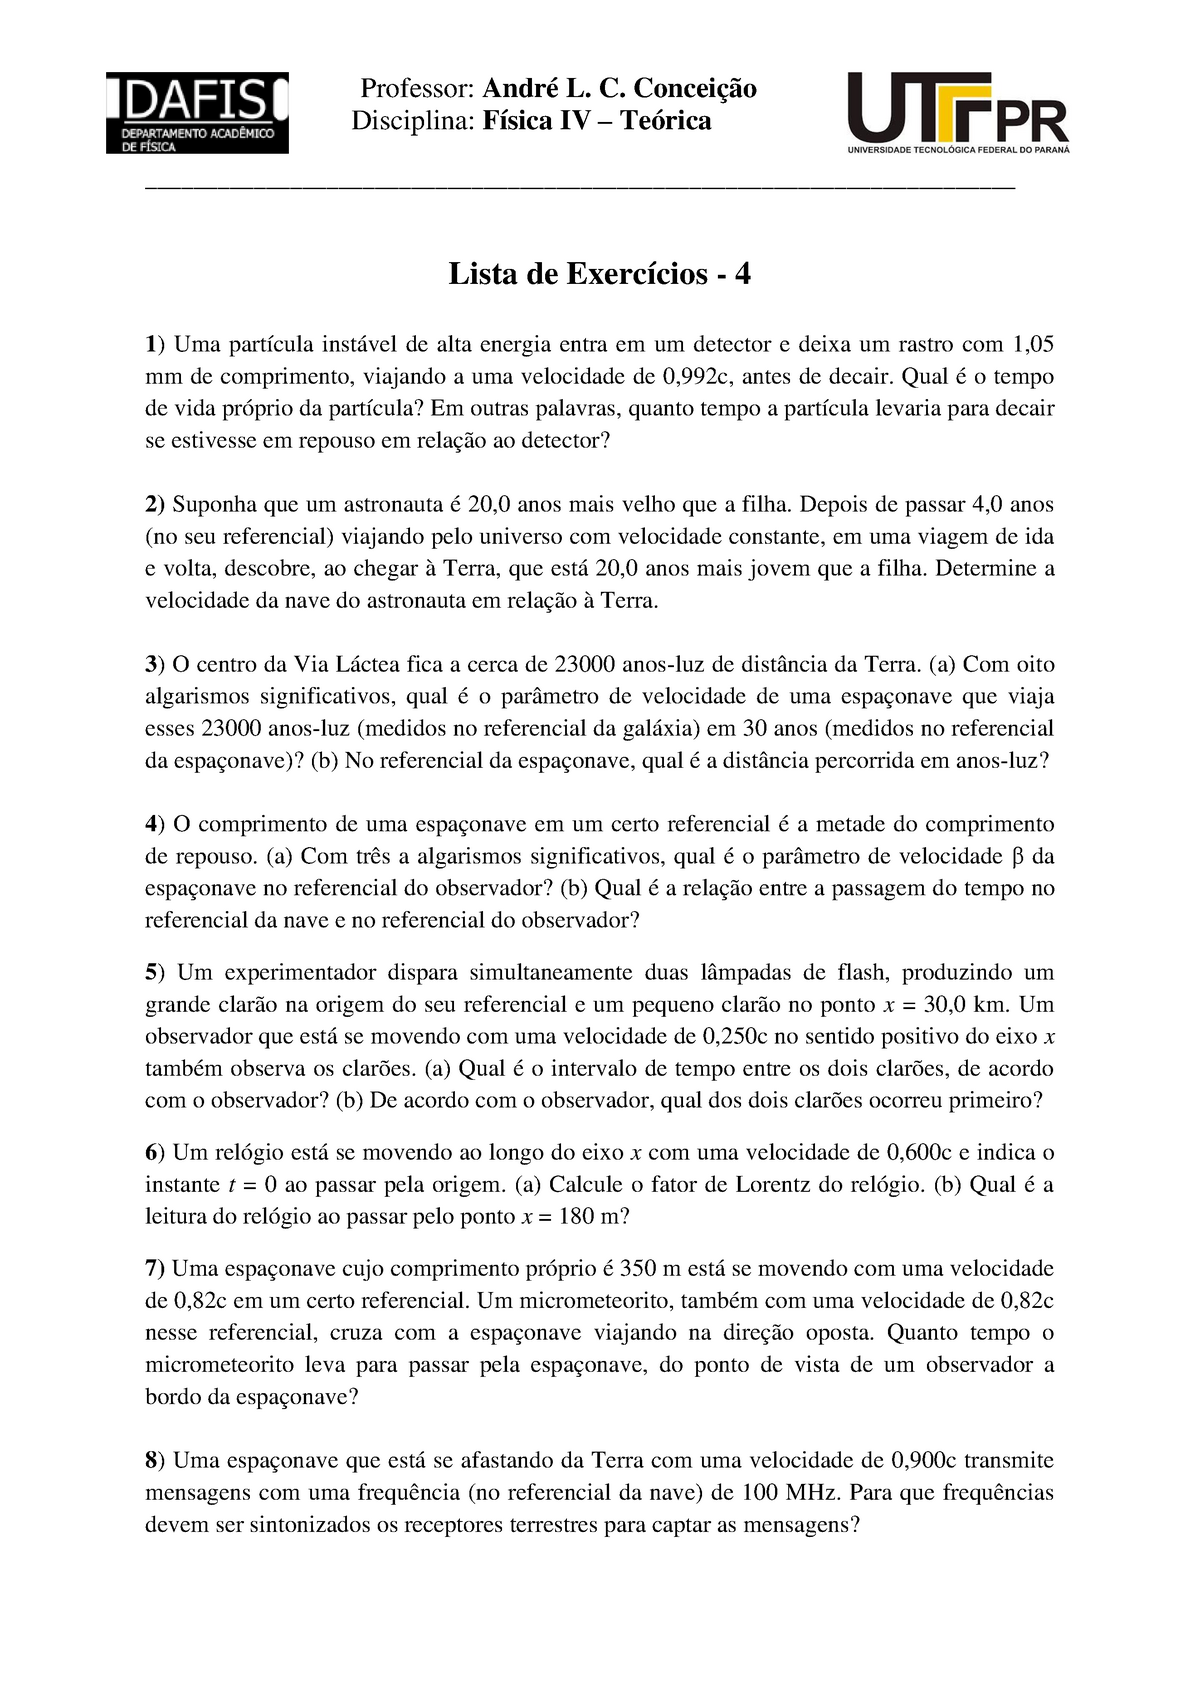 Lista de exercicios - LISTA DE EXERCÍCIOS Disciplina de Física Experimental  I 1) Quantos algarismos - Studocu